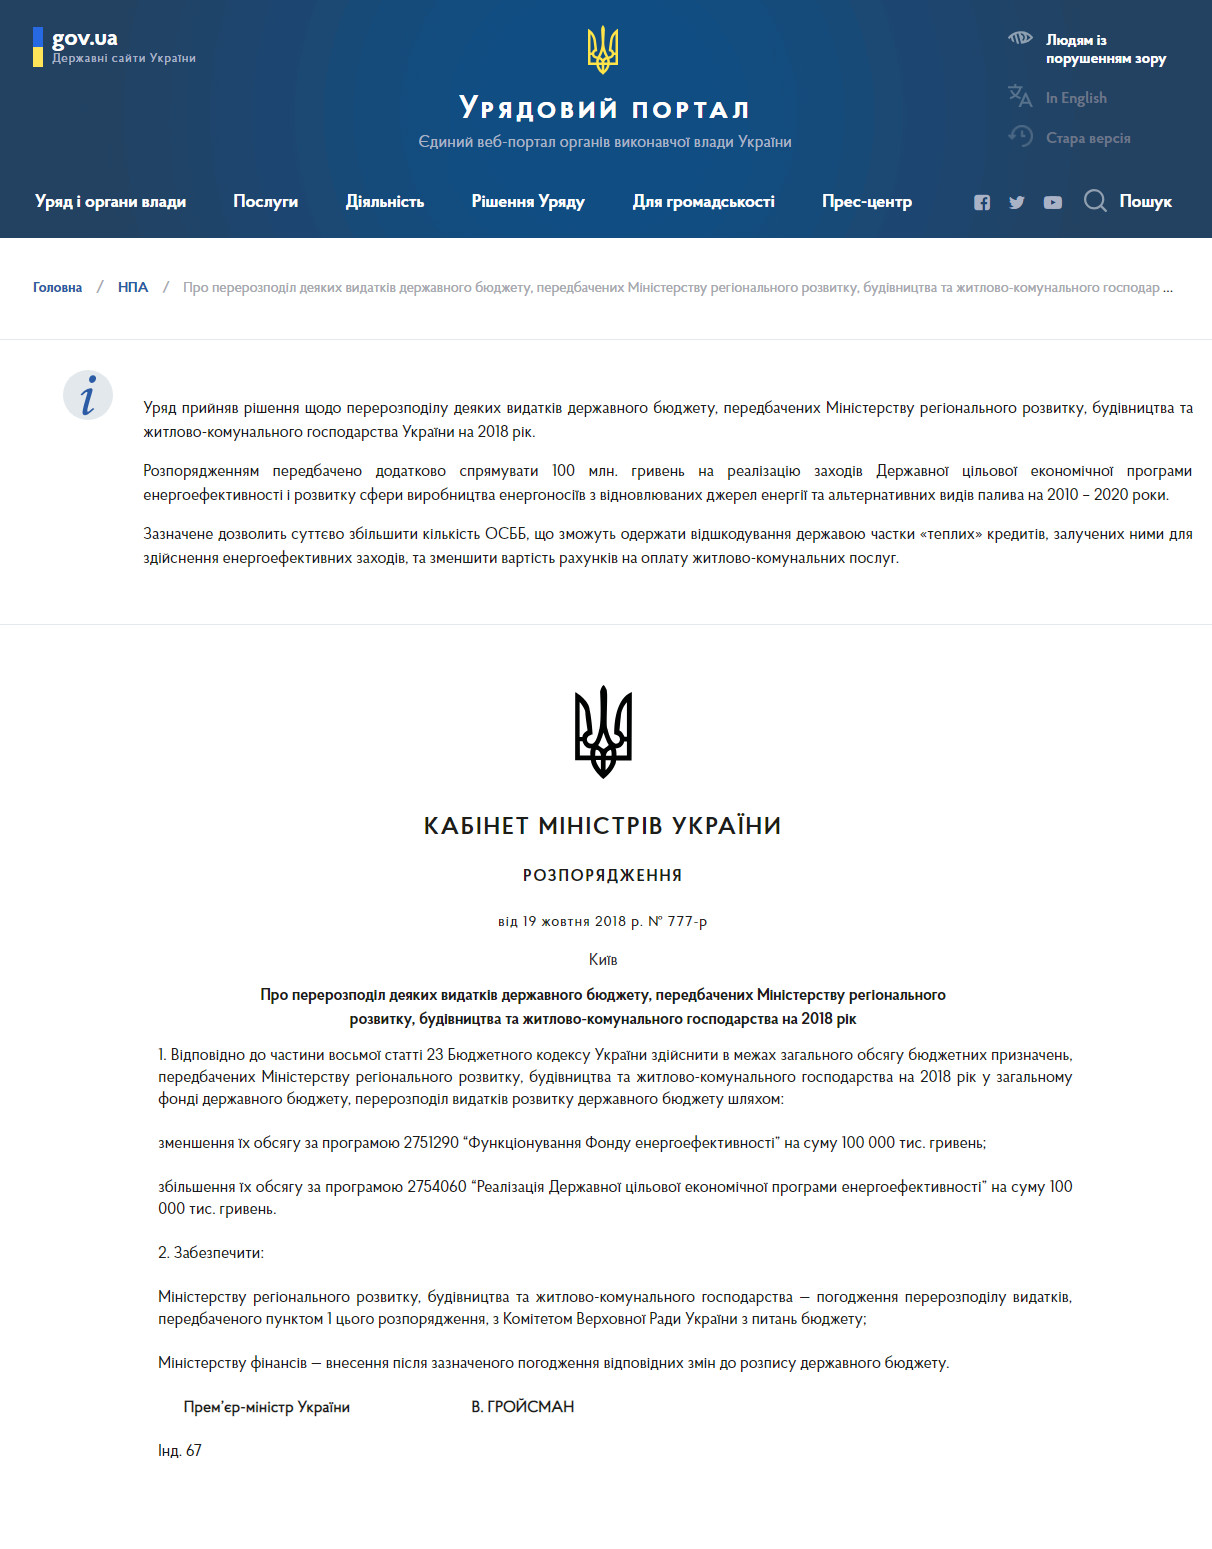 https://www.kmu.gov.ua/ua/npas/pro-pererozpodil-deyakih-vidatkiv-derzhavnogo-byudzhetu-peredbachenih-ministerstvu-regionalnogo-rozvitku-budivnictva-ta-zhitlovo-komunalnogo-gospodarstva-na-2018-ri